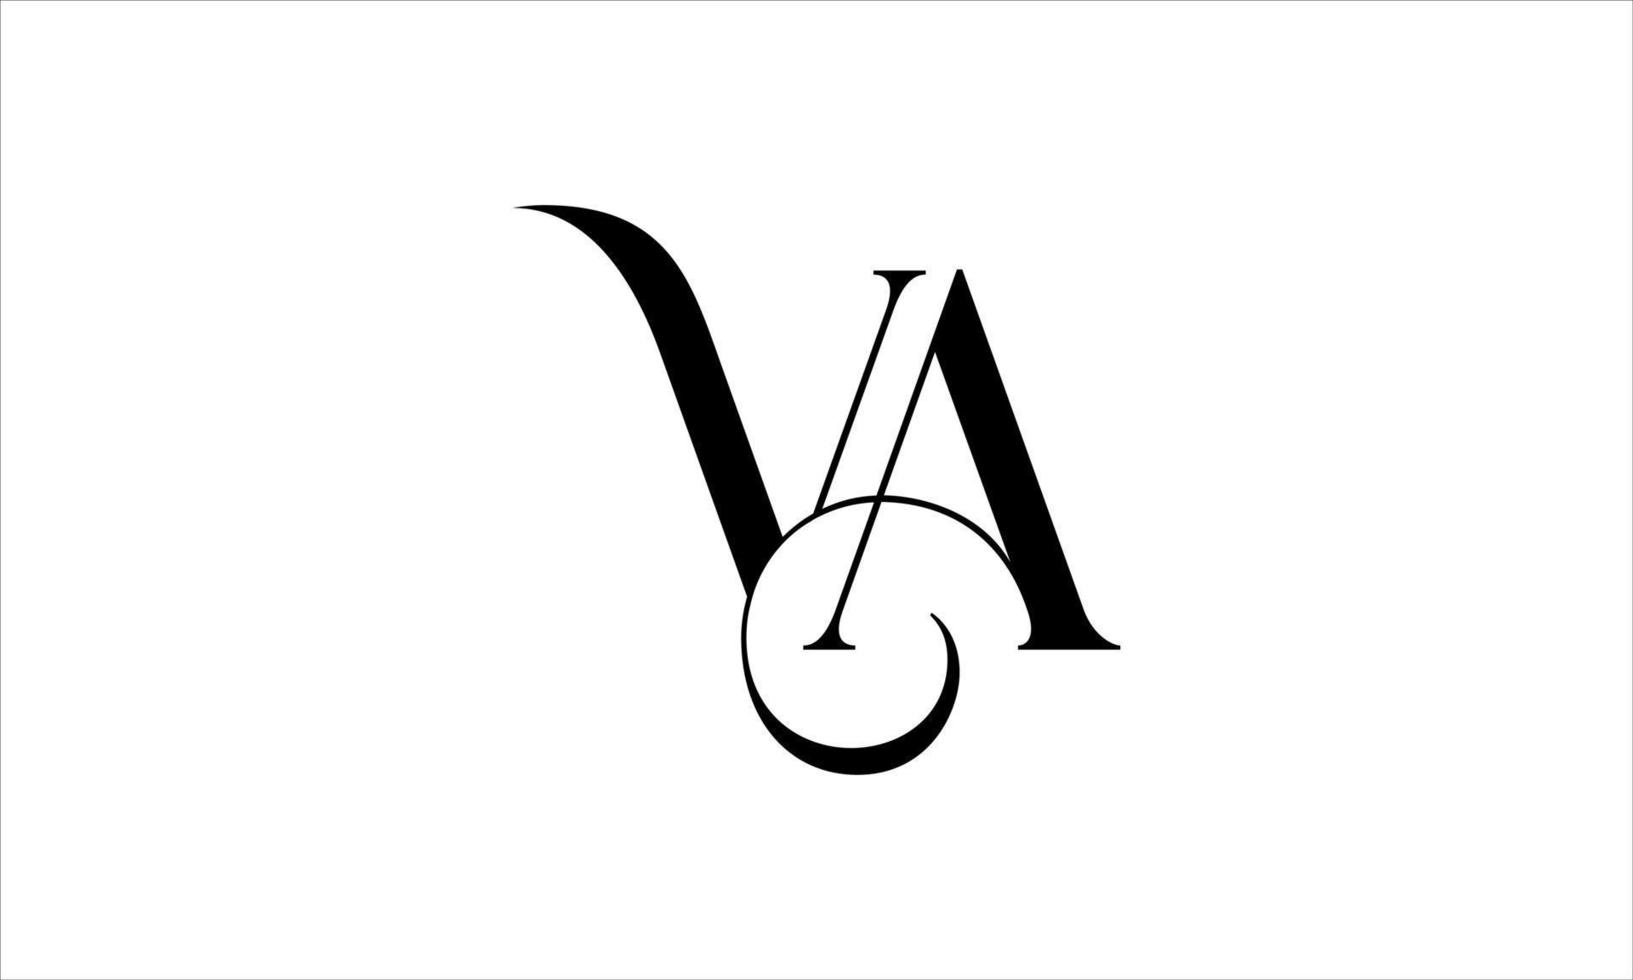 création de logo va. vecteur de conception d'icône de logo de lettre va initiale vecteur pro.